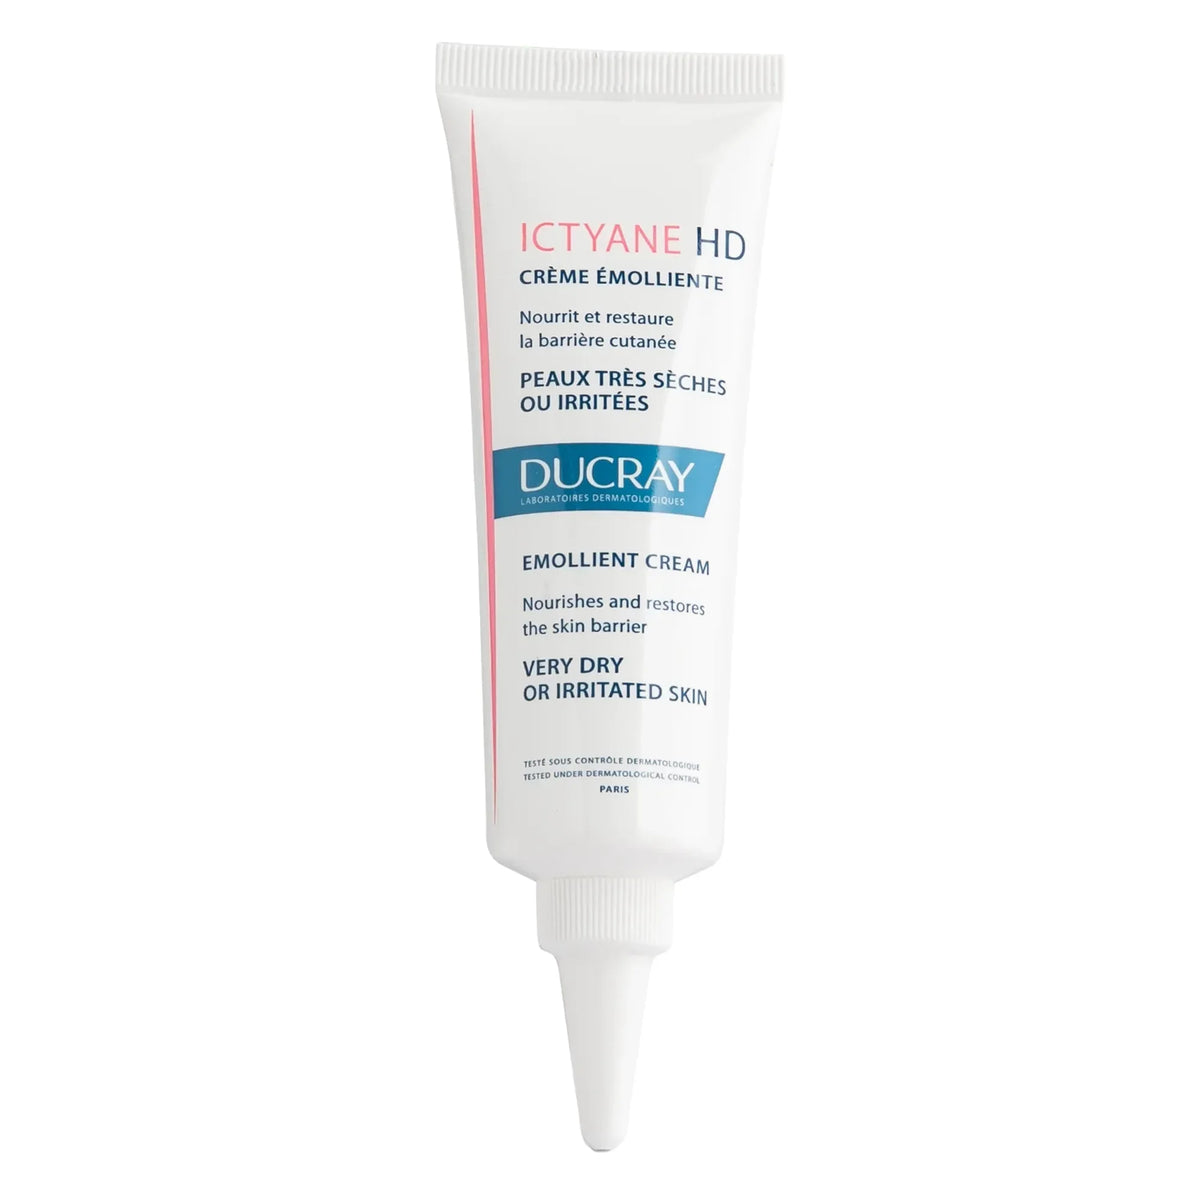 Ictyane HD Emollient Cream